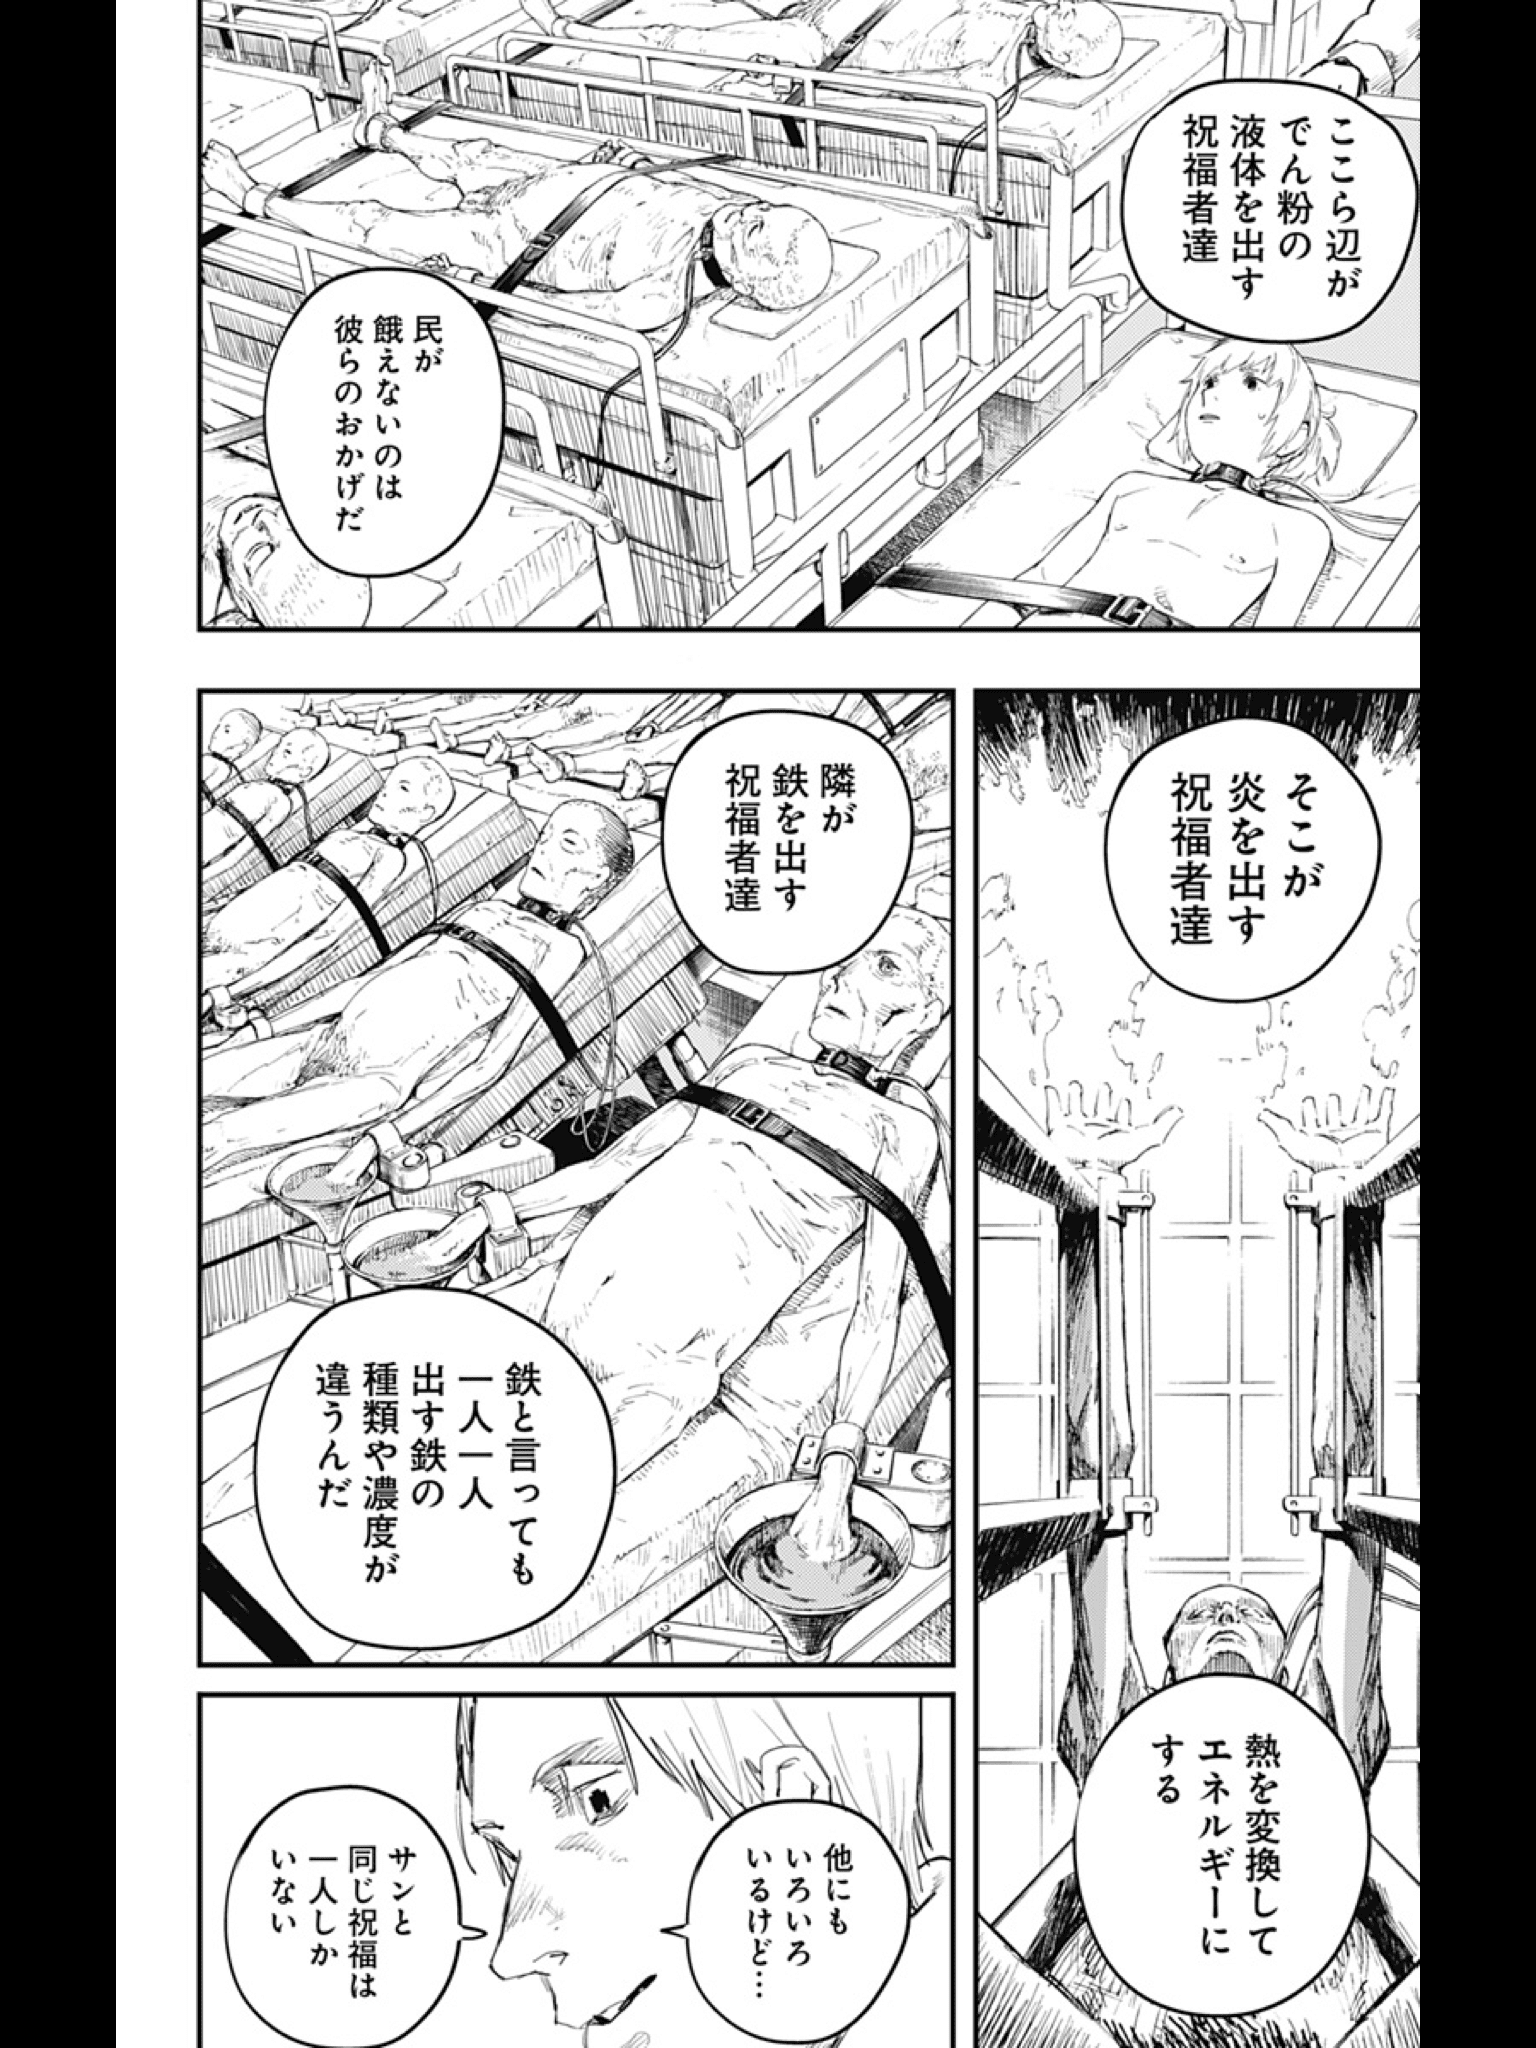 50 リスキー 漫画 ネタバレ 35 ワンピースイラストアニメ